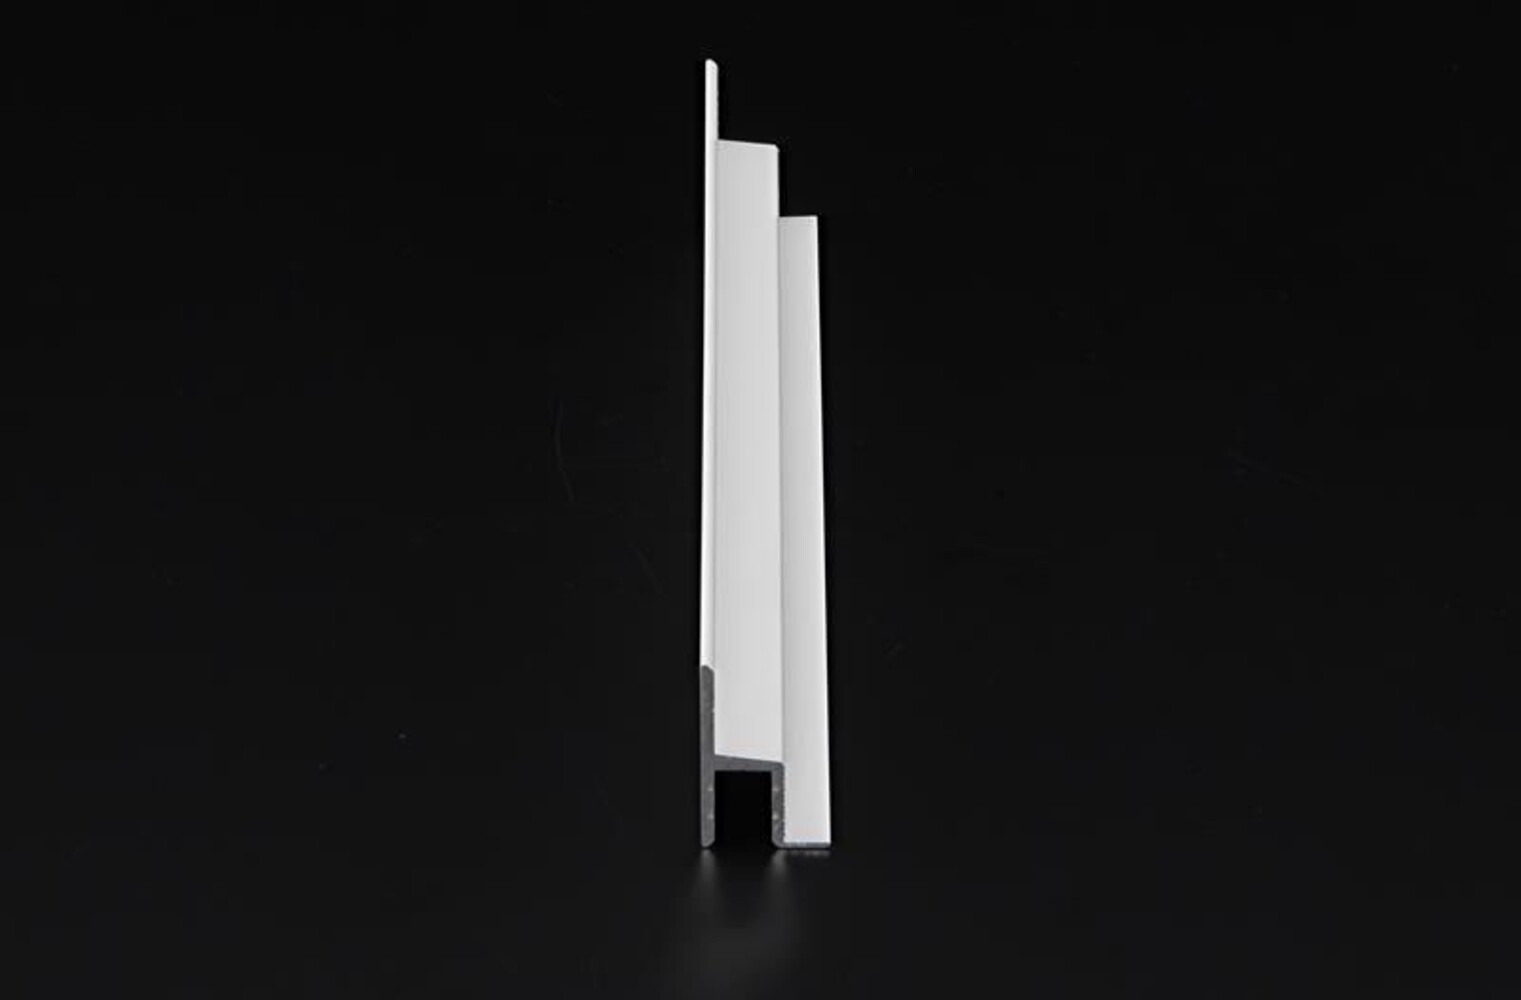 Fantastisches LED Profil von Deko-Light in mattem Weiß für 12mm LED Stripes